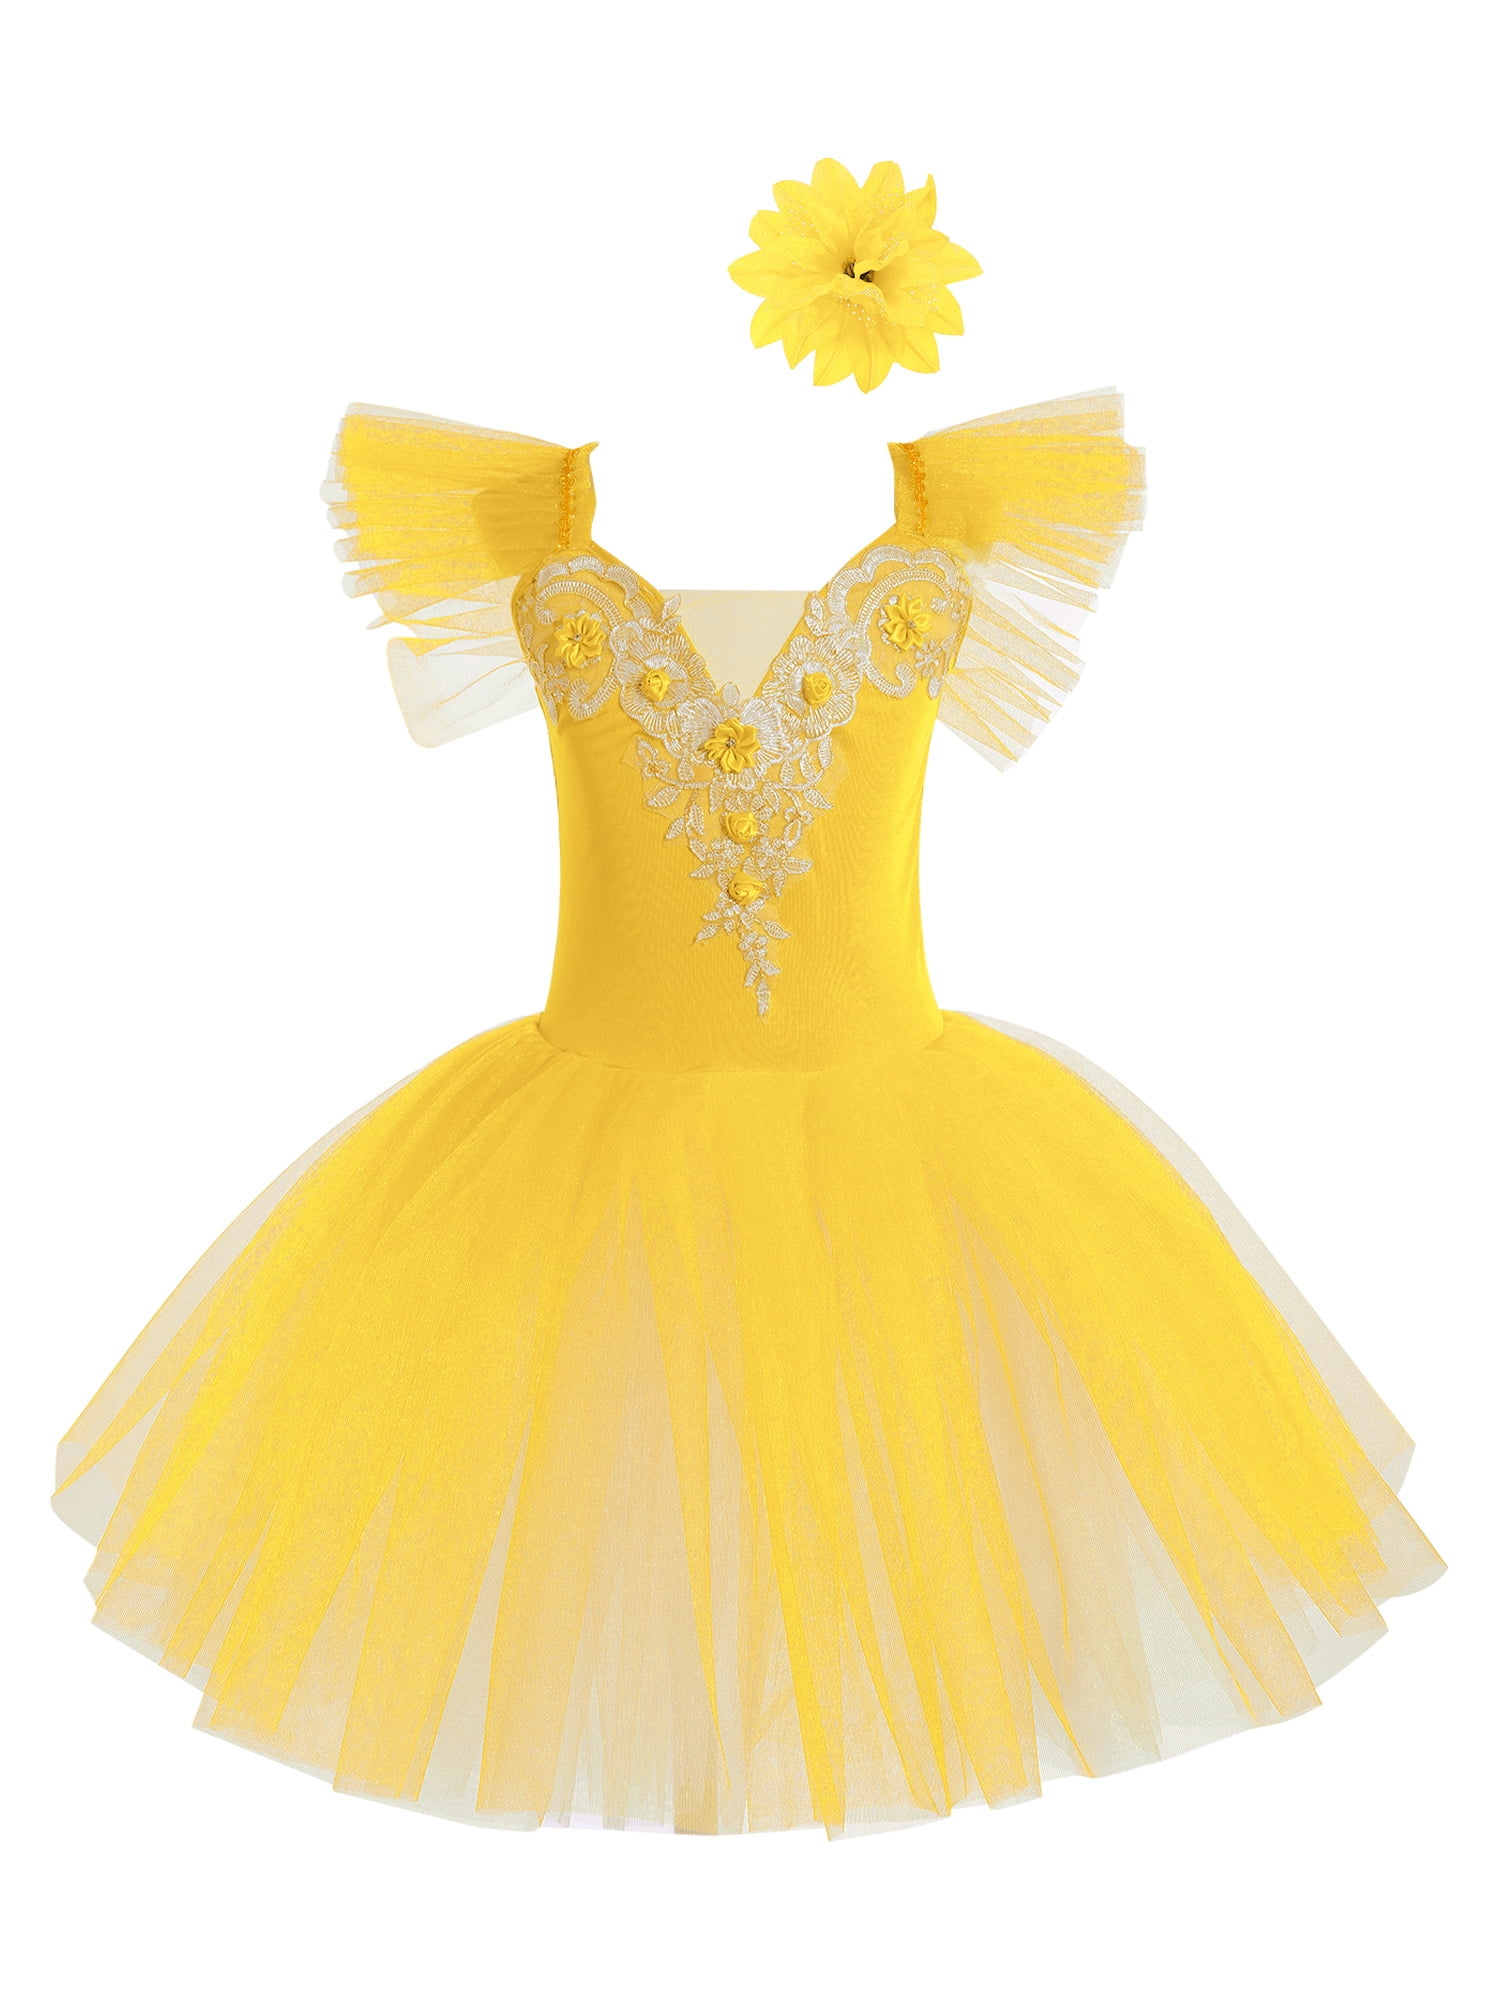 CHICTRY Little Girls Ballerina Tutus Mesh Dress Dance Costume Spaghetti ...